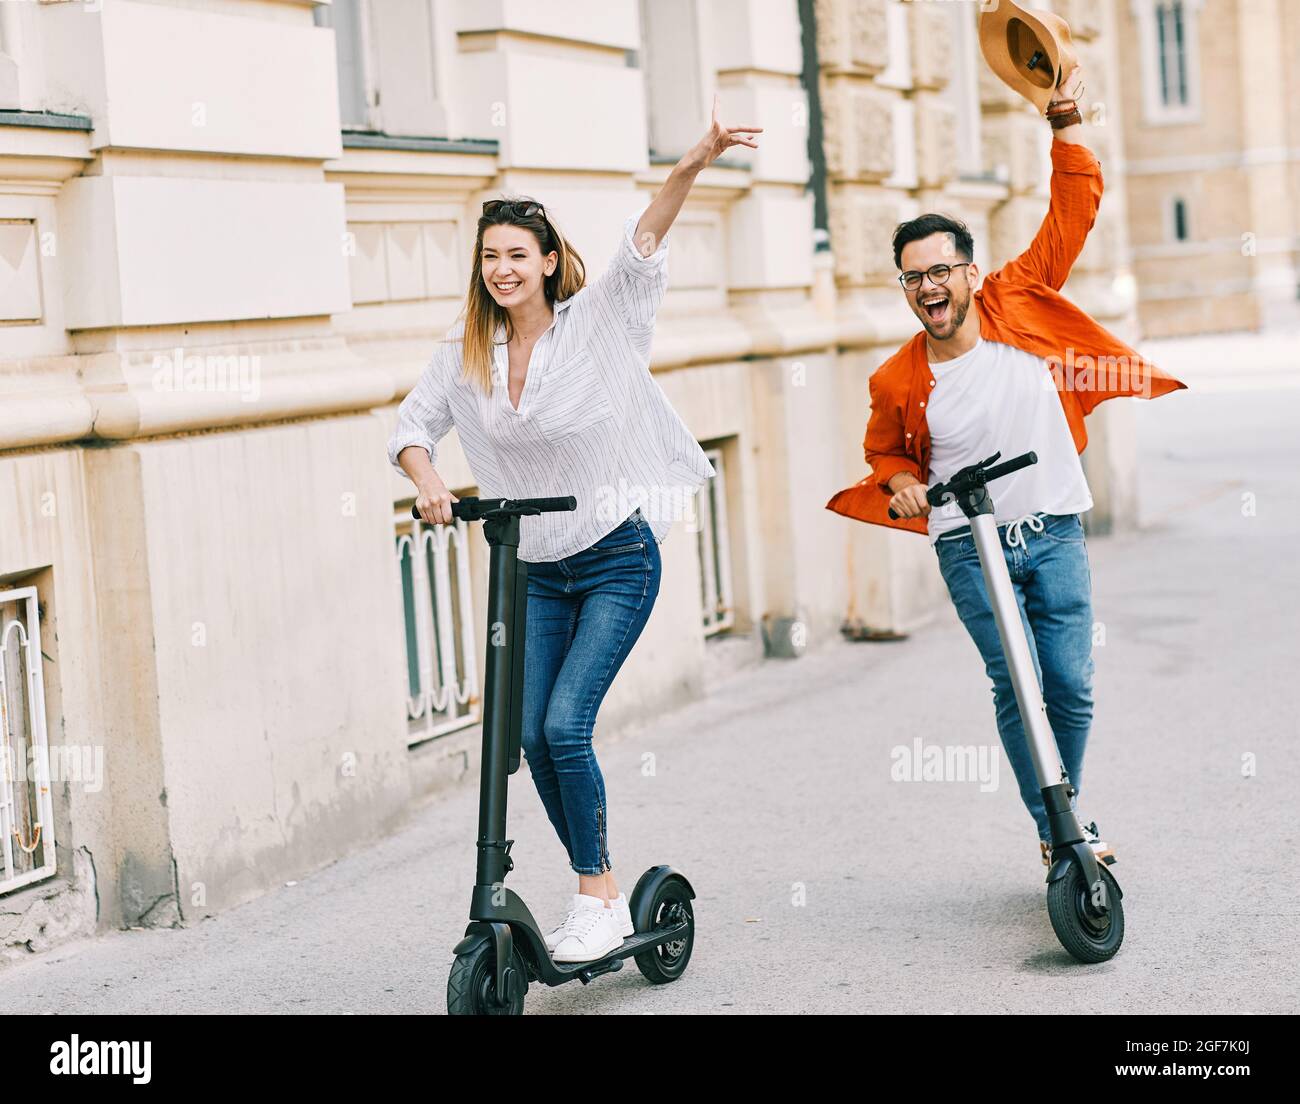 Paar junge Elektroroller Stadt Transport Reiten Technologie lifestylestreet Freund fahren modern Stockfoto